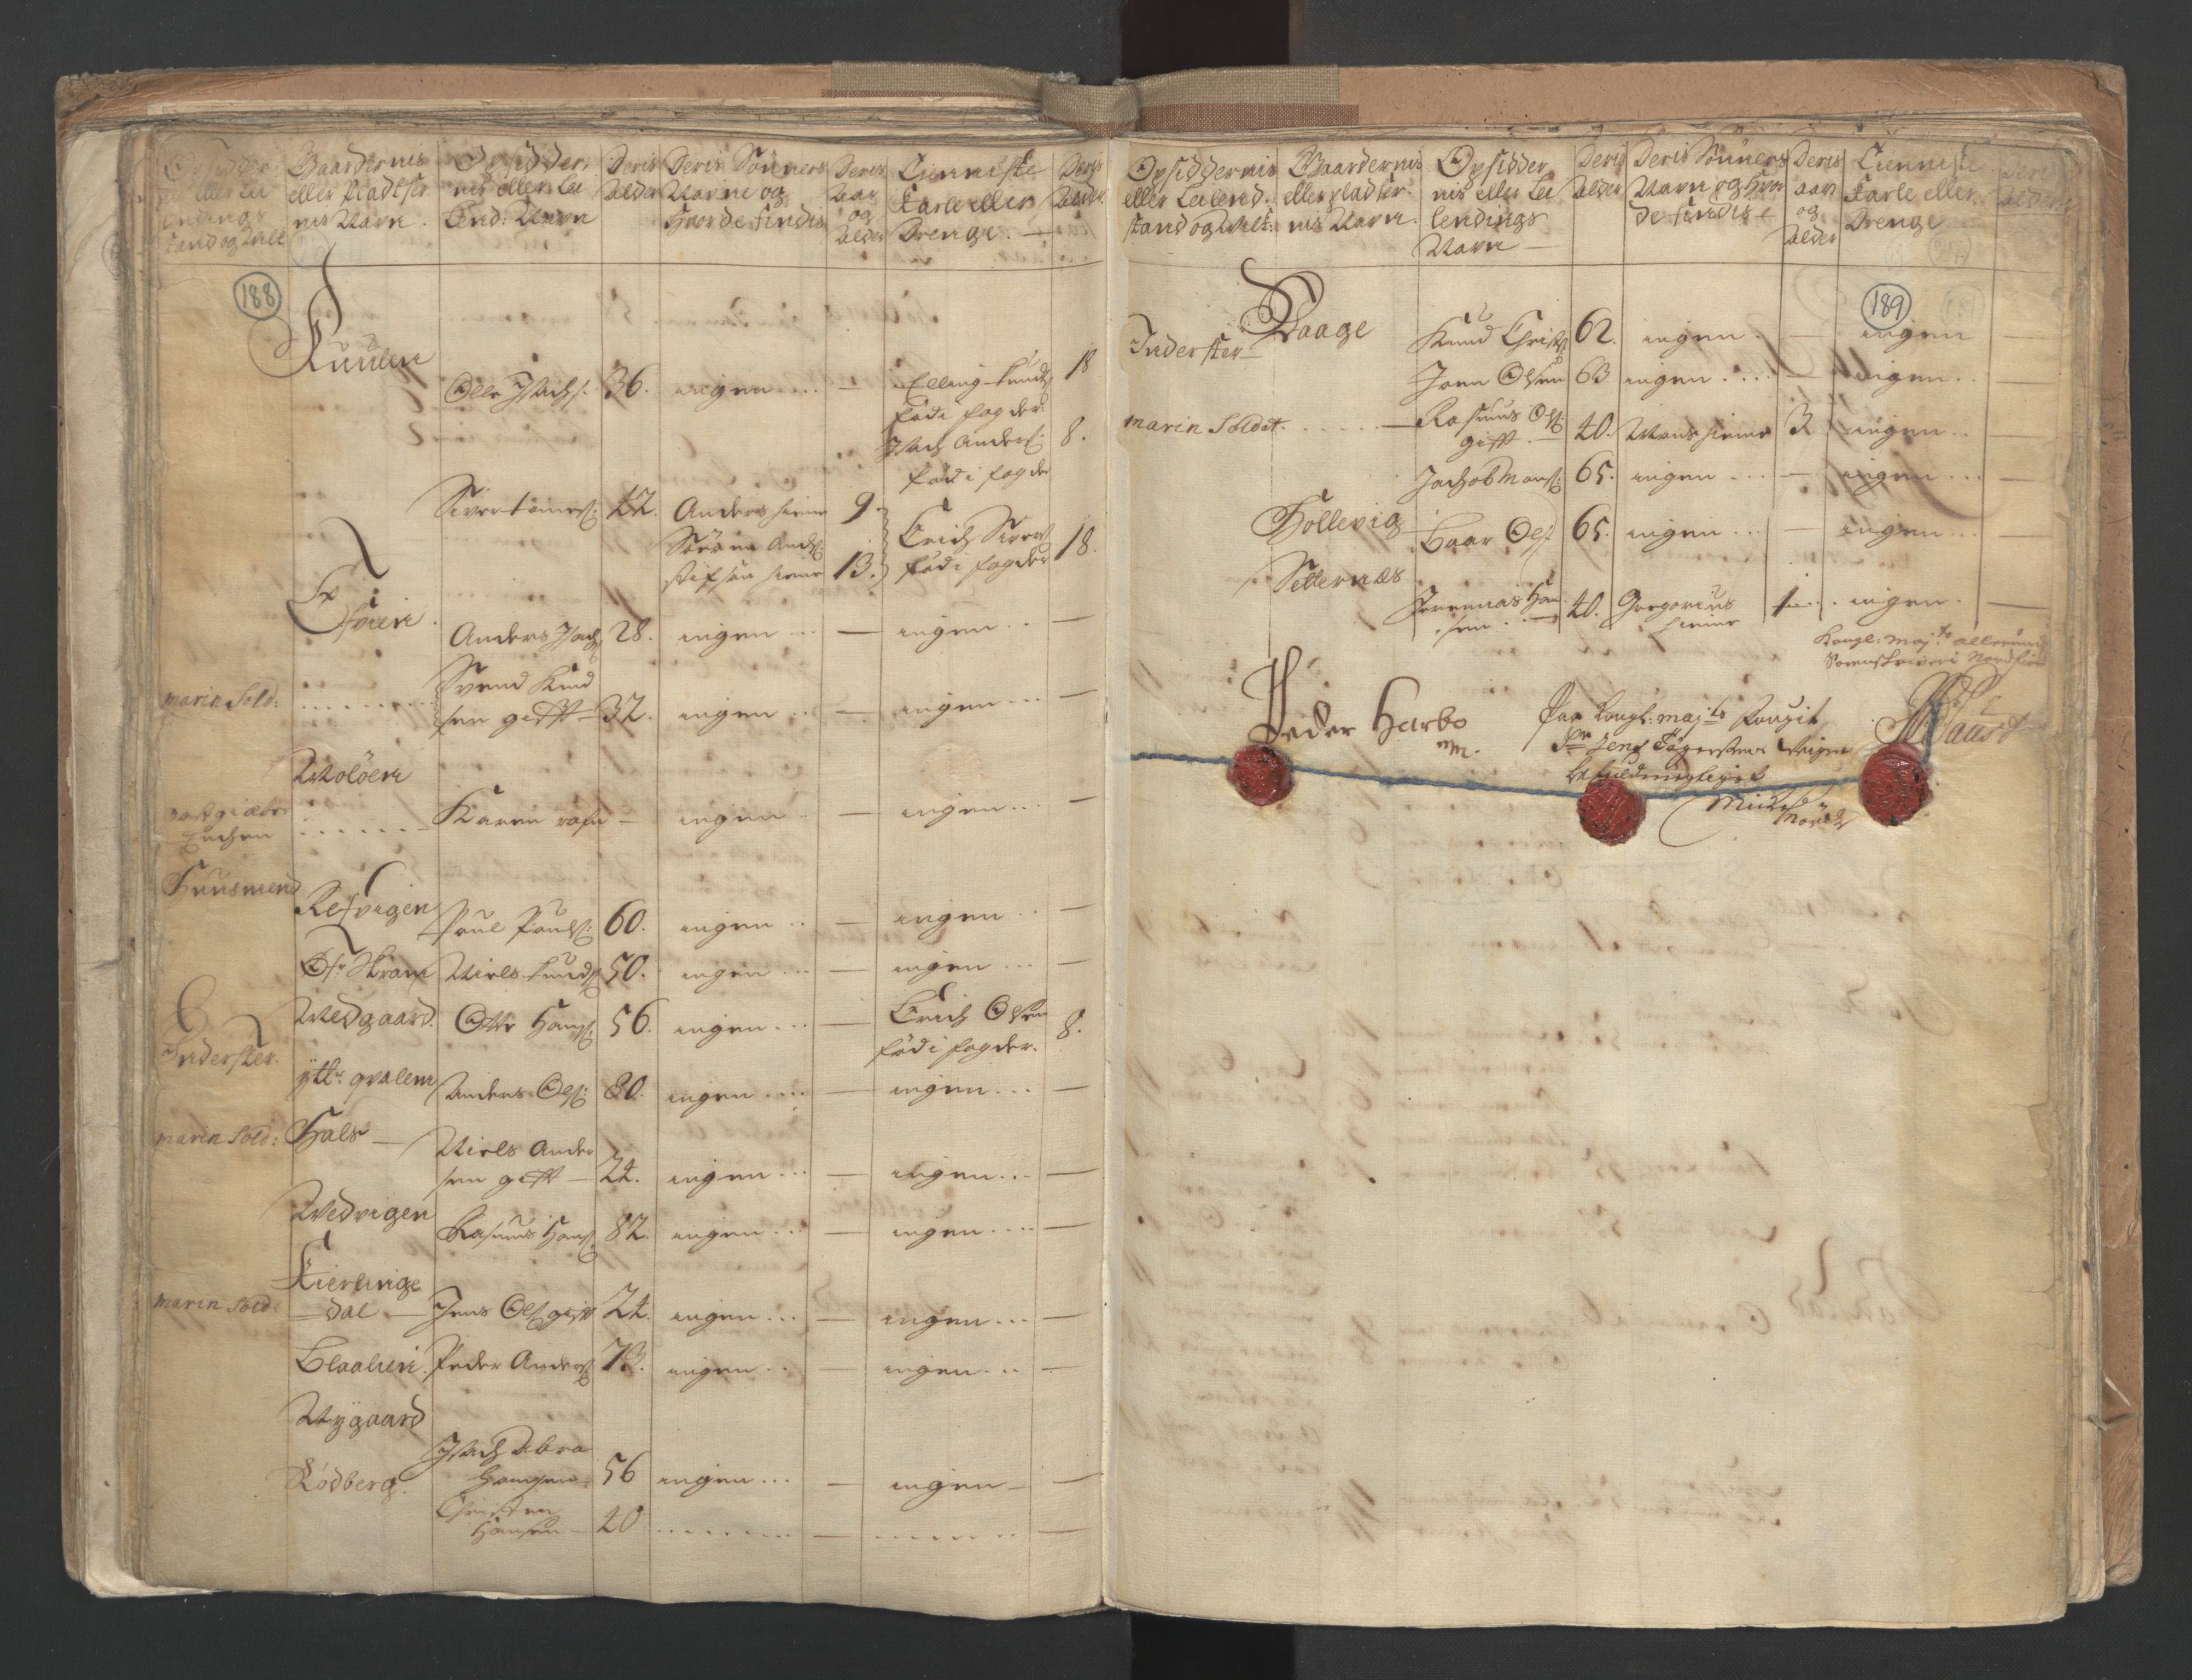 RA, Census (manntall) 1701, no. 9: Sunnfjord fogderi, Nordfjord fogderi and Svanø birk, 1701, p. 188-189